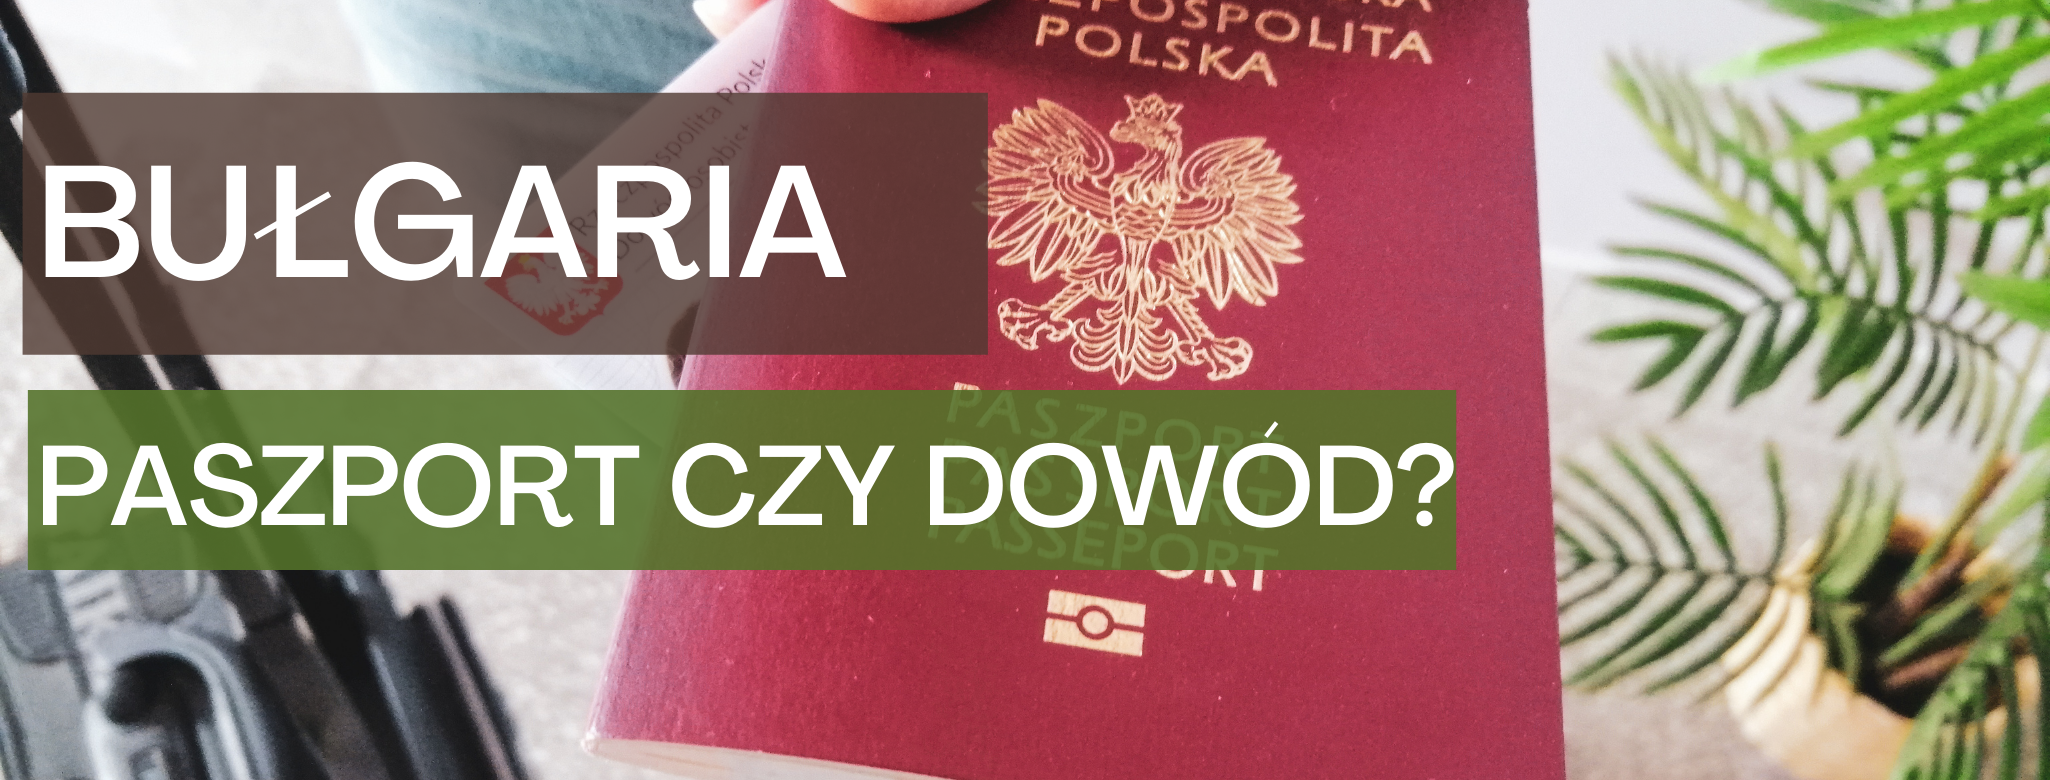 bulgaria-paszport-czy-dowod